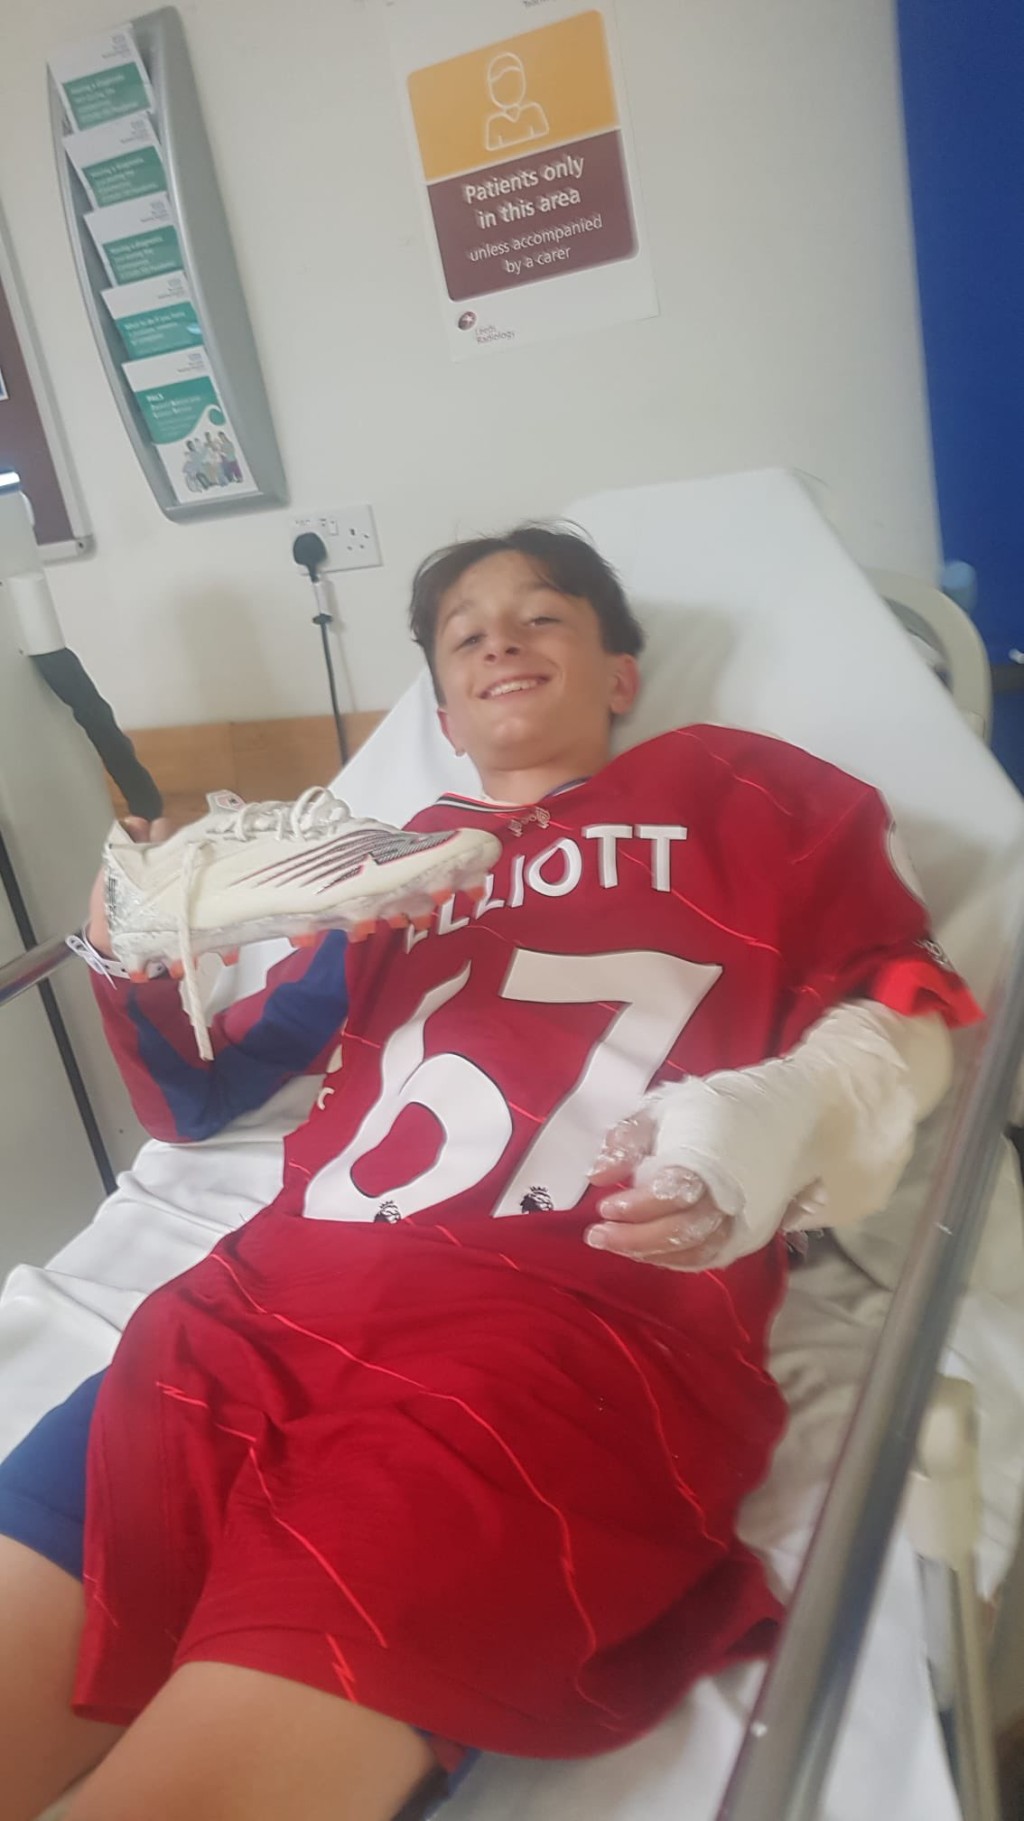 入院之後，艾利洛將球衣及球鞋送給同樣受傷的小球員，鼓勵他努力康復。 網上圖片